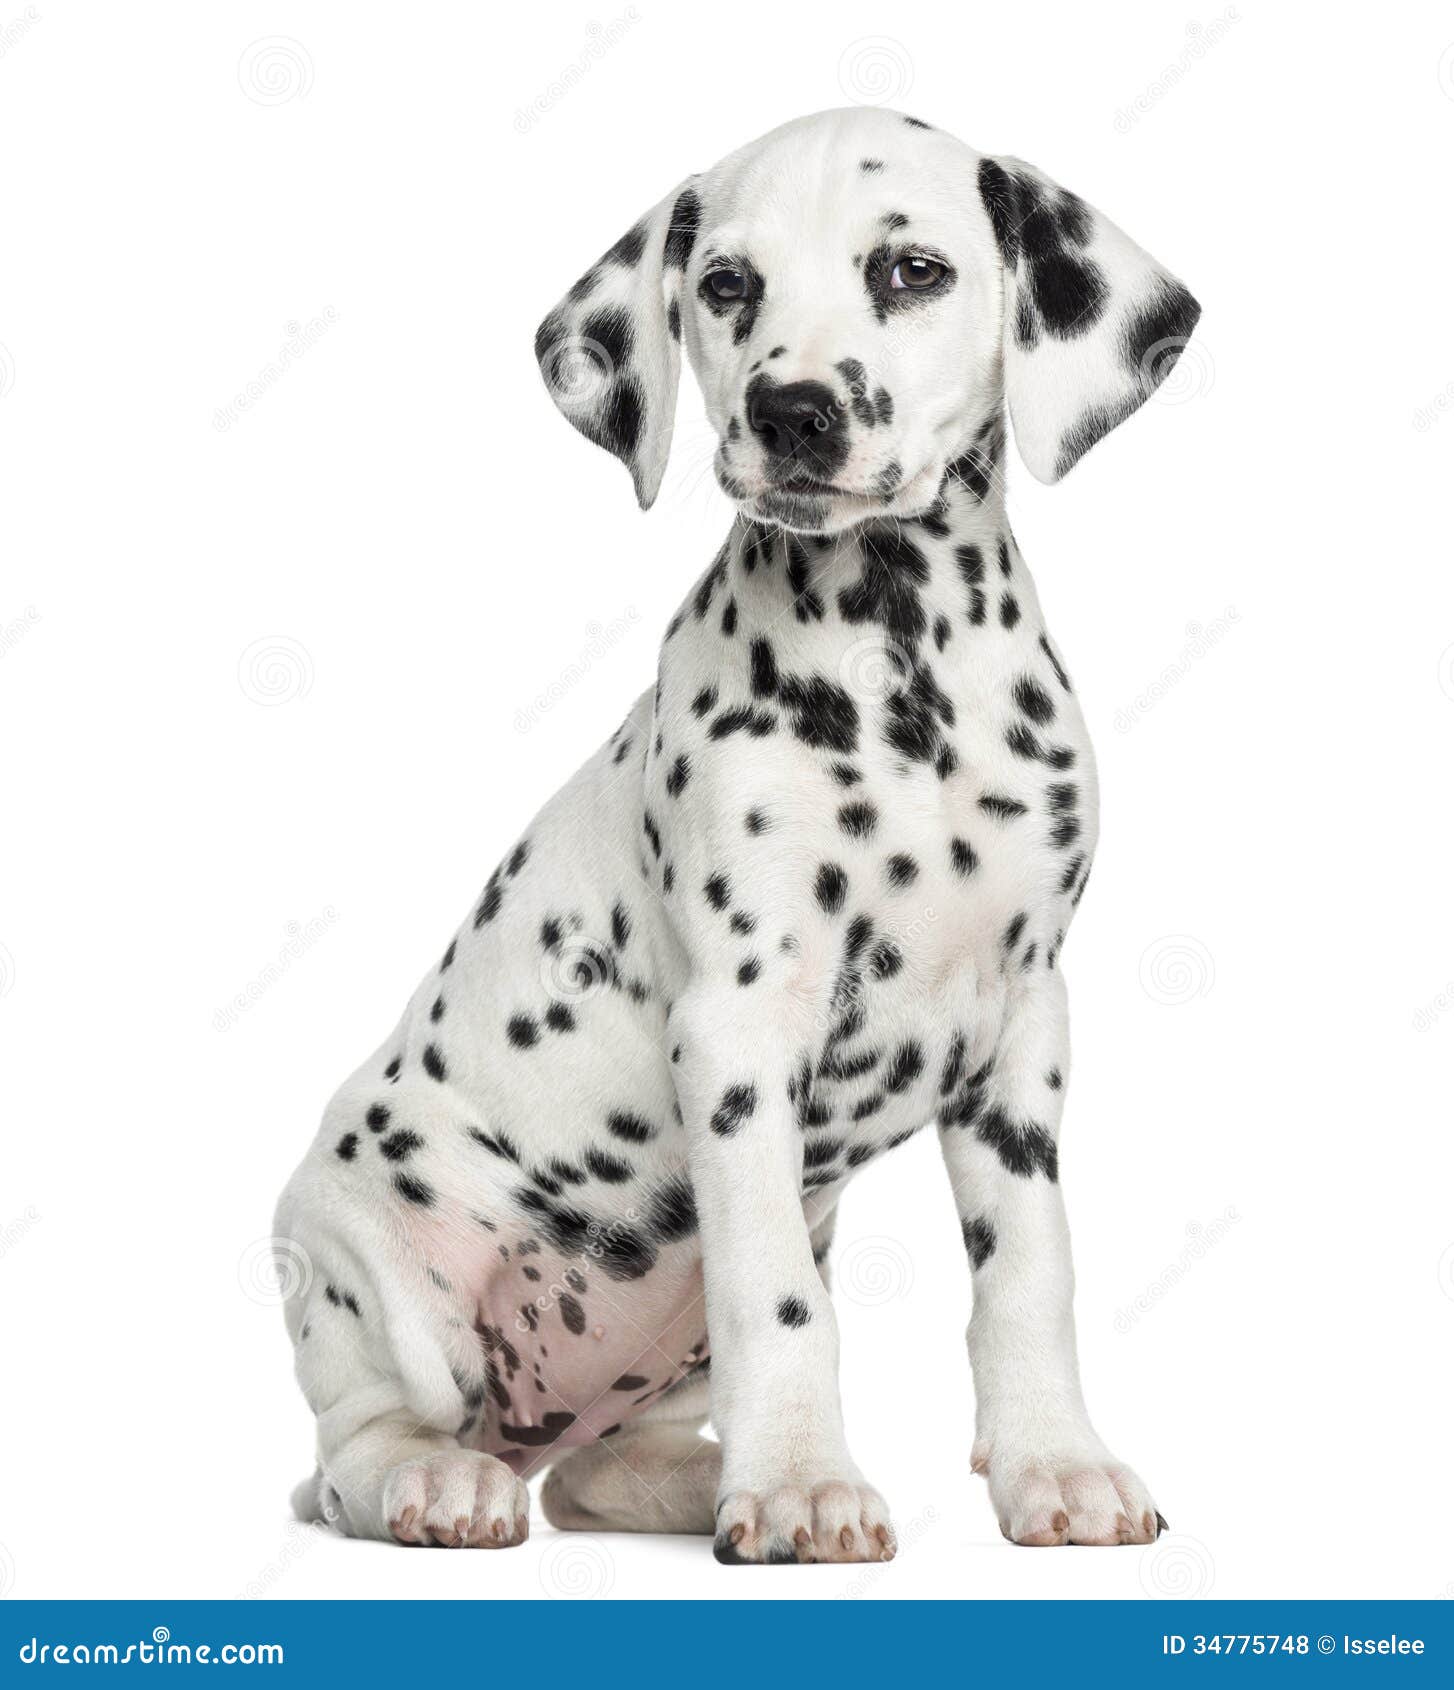 dalmatian puppy sitting, 